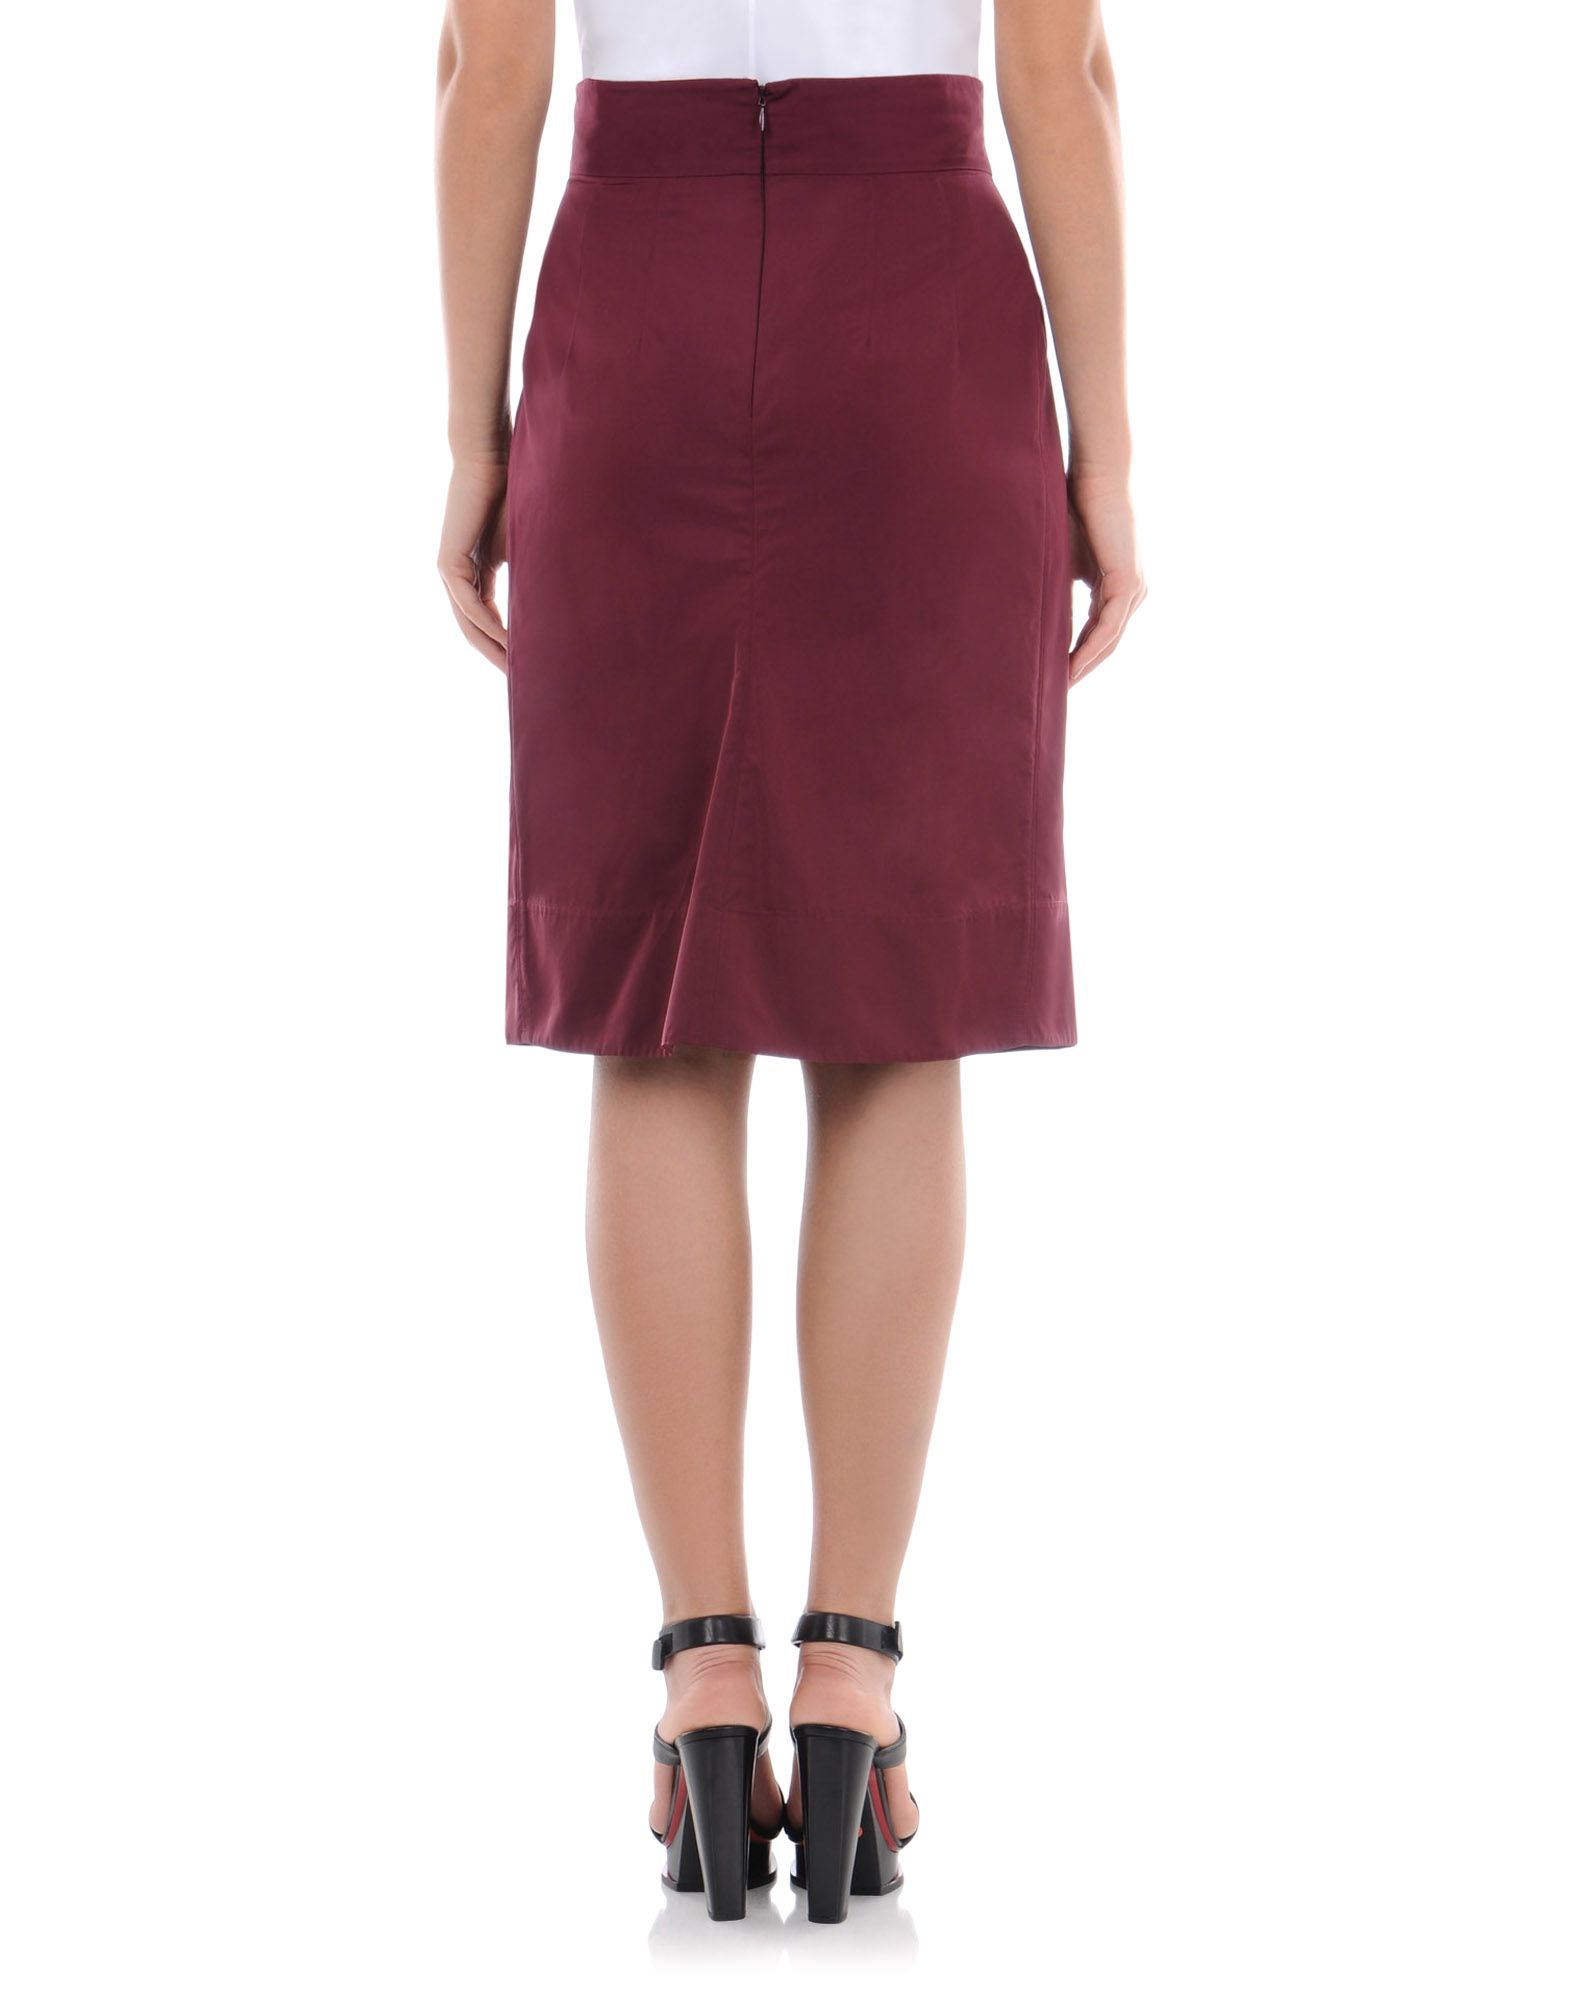 Skirt Women - Skirts Women on Jil Sander Online Store